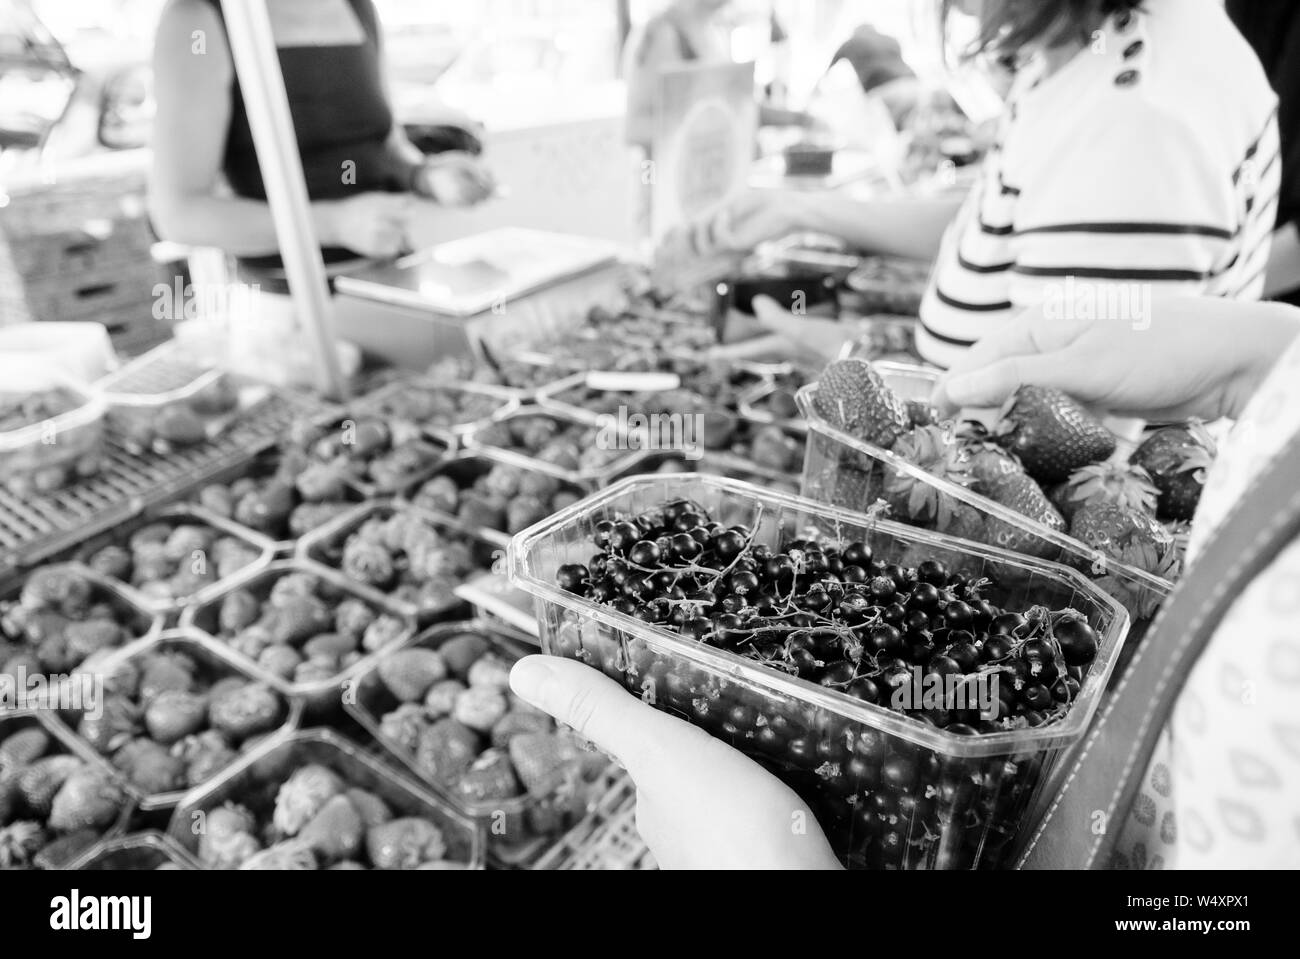 Französische Frau Shopping für frische Johannisbeeren und Erdbeeren auf Bauernmarkt - Bio Bio Lebensmittel im französischen Dörfer schwarz-weiß Bild geerntet Stockfoto